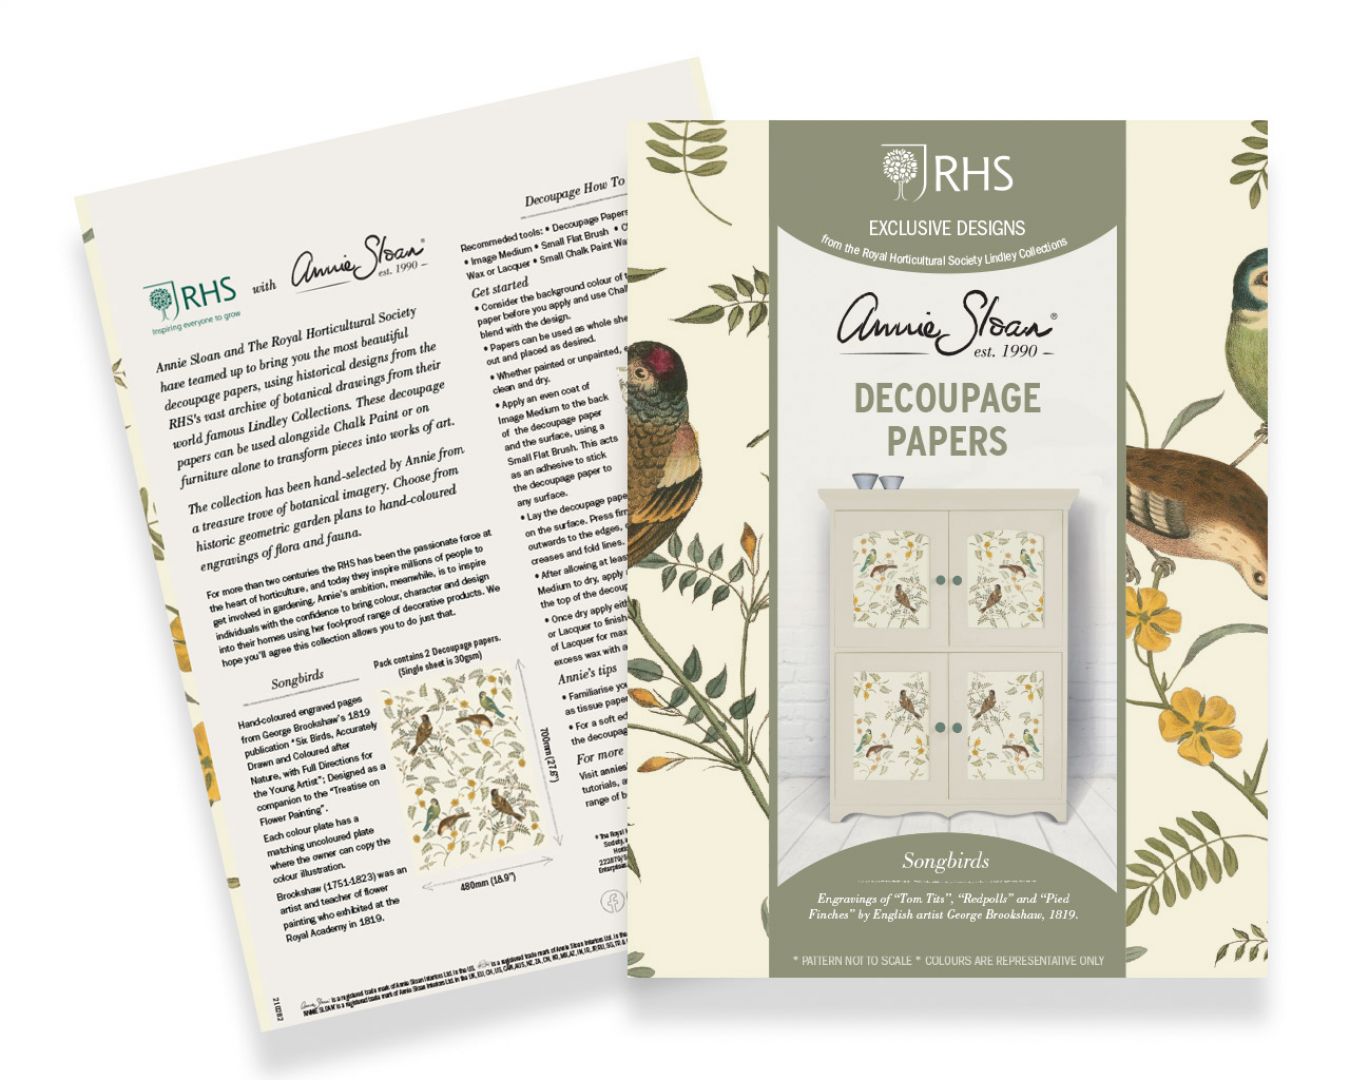 Nowa propozycja Annie Sloan to kolekcja papierów do dekoracji metodą decoupage. Obejmuje dwanaście pięknych botanicznych wzorów. Fot. mat. prasowe Annie Sloan